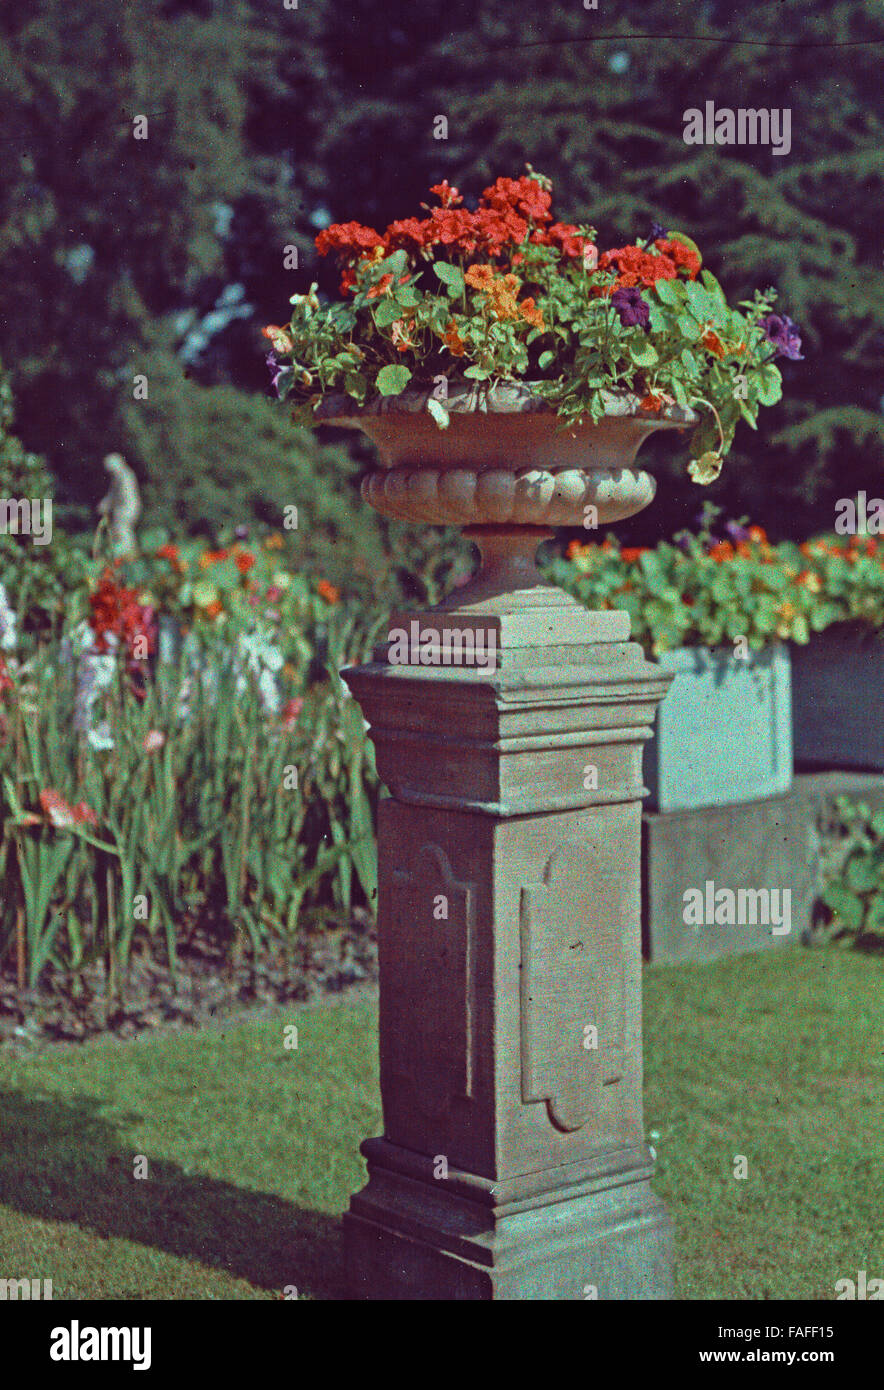 Frühe Farbaufnahme von Einems Besuch in Den Botanischen Gärten der Flora in Köln, Deutschland 1910er Jahre. Schon früh Farbe Fotografie einen Besuch im Botanischen Garten Flora in Köln 1910er Jahre. Stockfoto